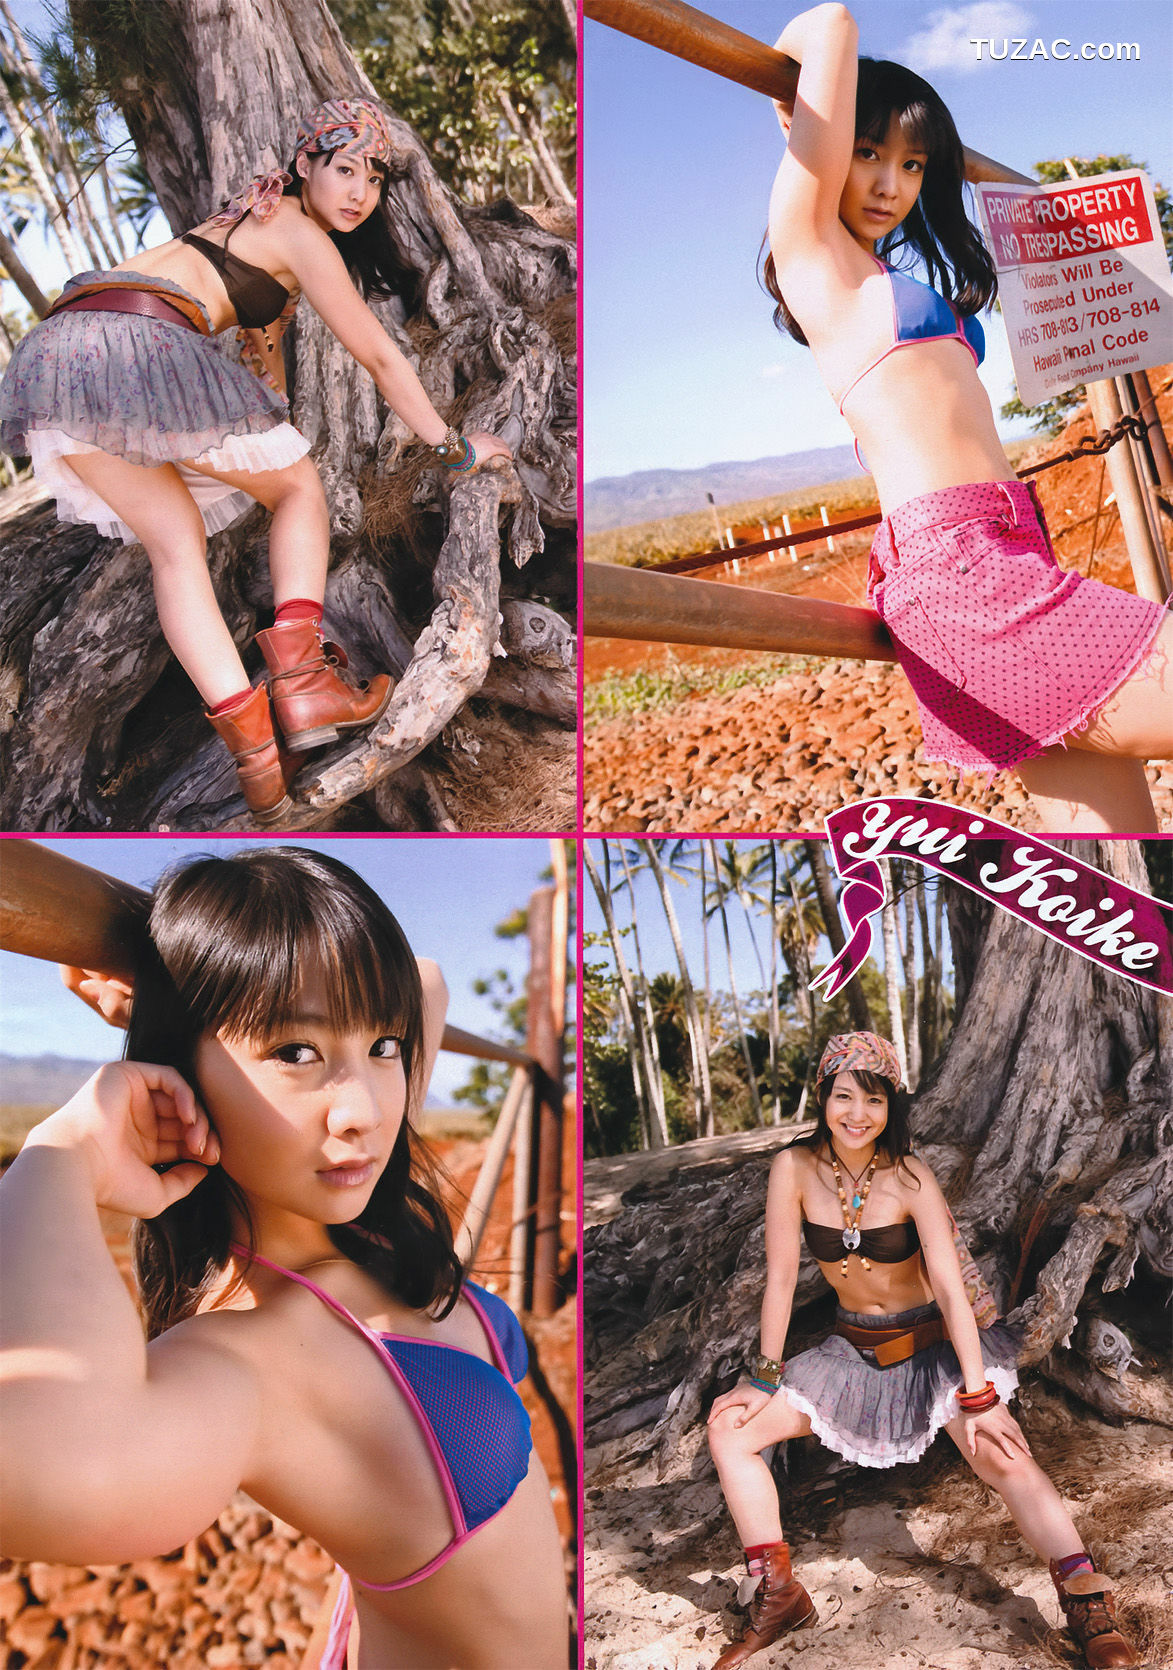 Young Magazine杂志写真_ 小池唯 Yui Koike 2011年No.14 写真杂志[18P]